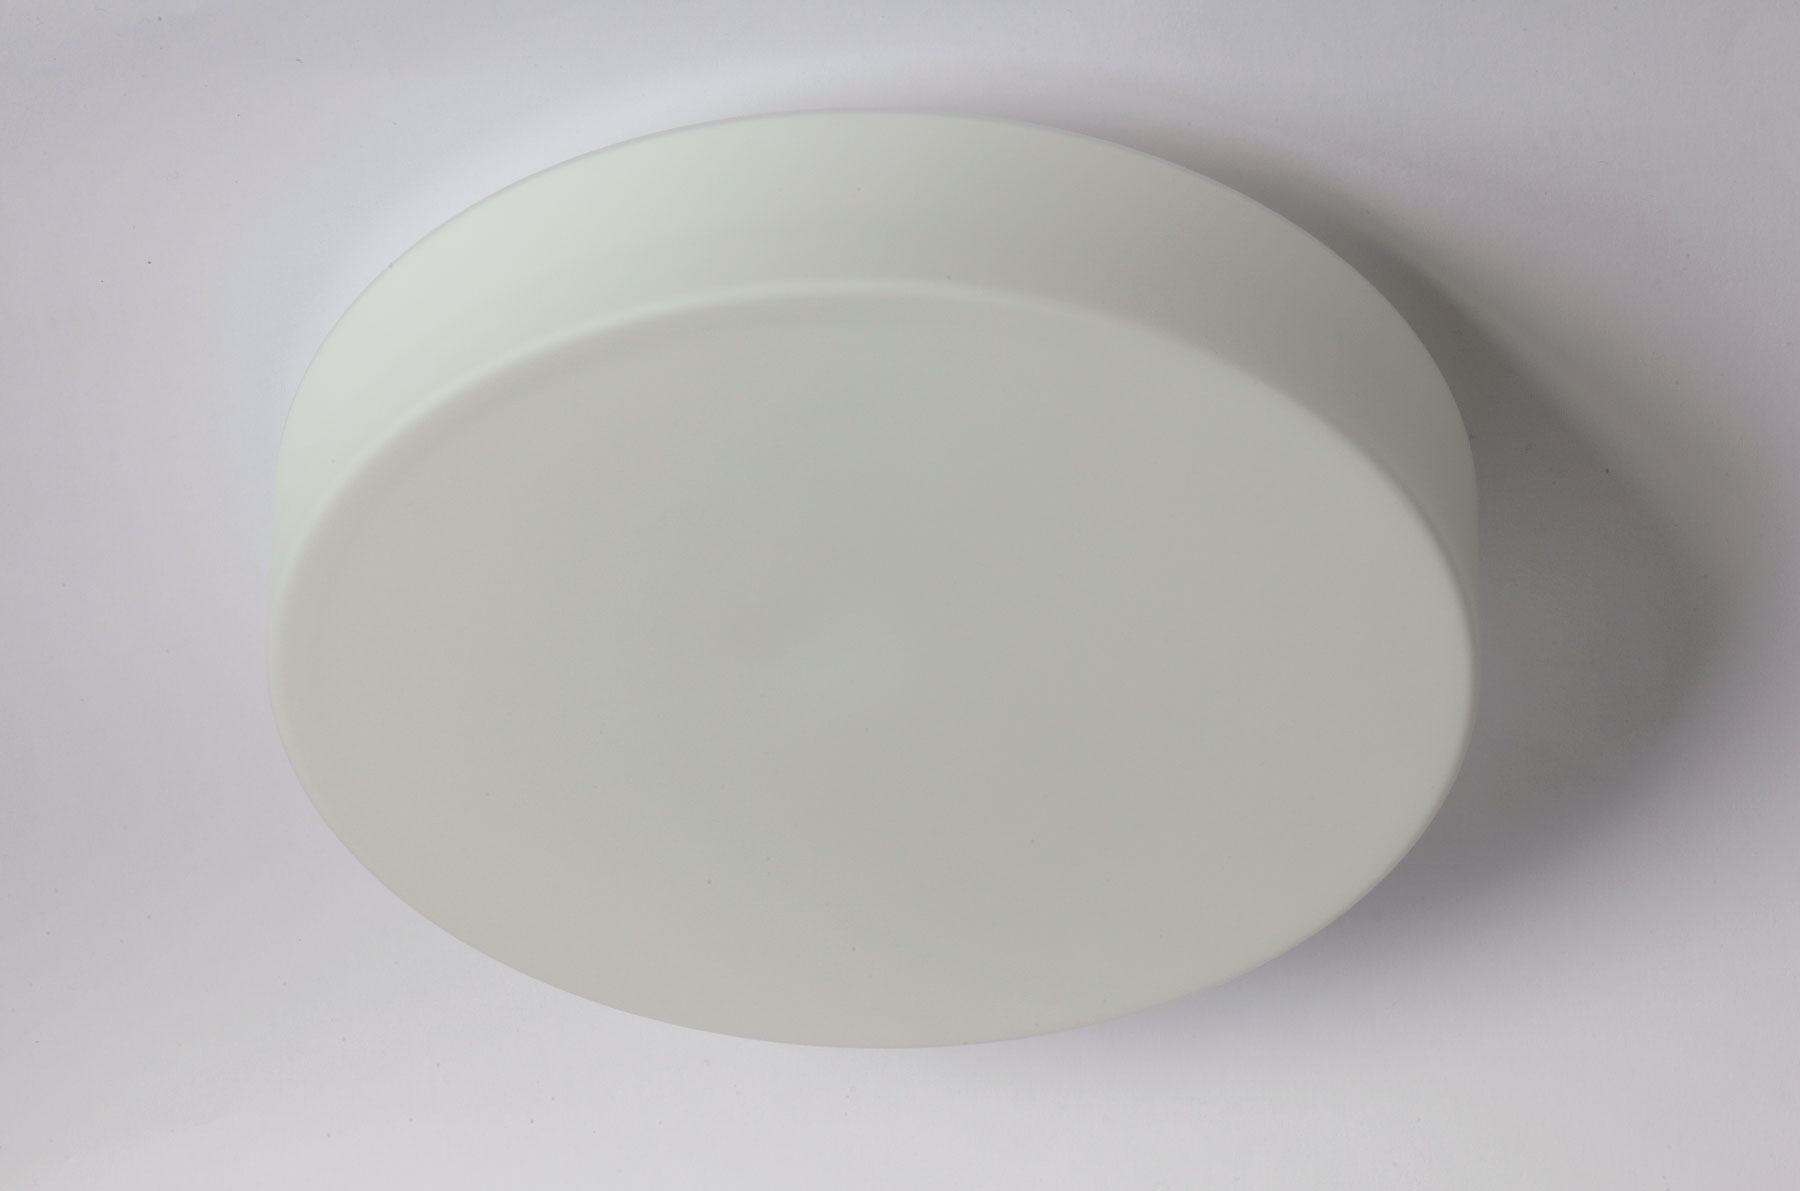 Schlichte, runde Opalglas-Deckenleuchte ELISA, Ø 25 bis 60 cm: Die schlichte, runde Glas-Deckenleuchte (hier mit Ø 36 cm, M)